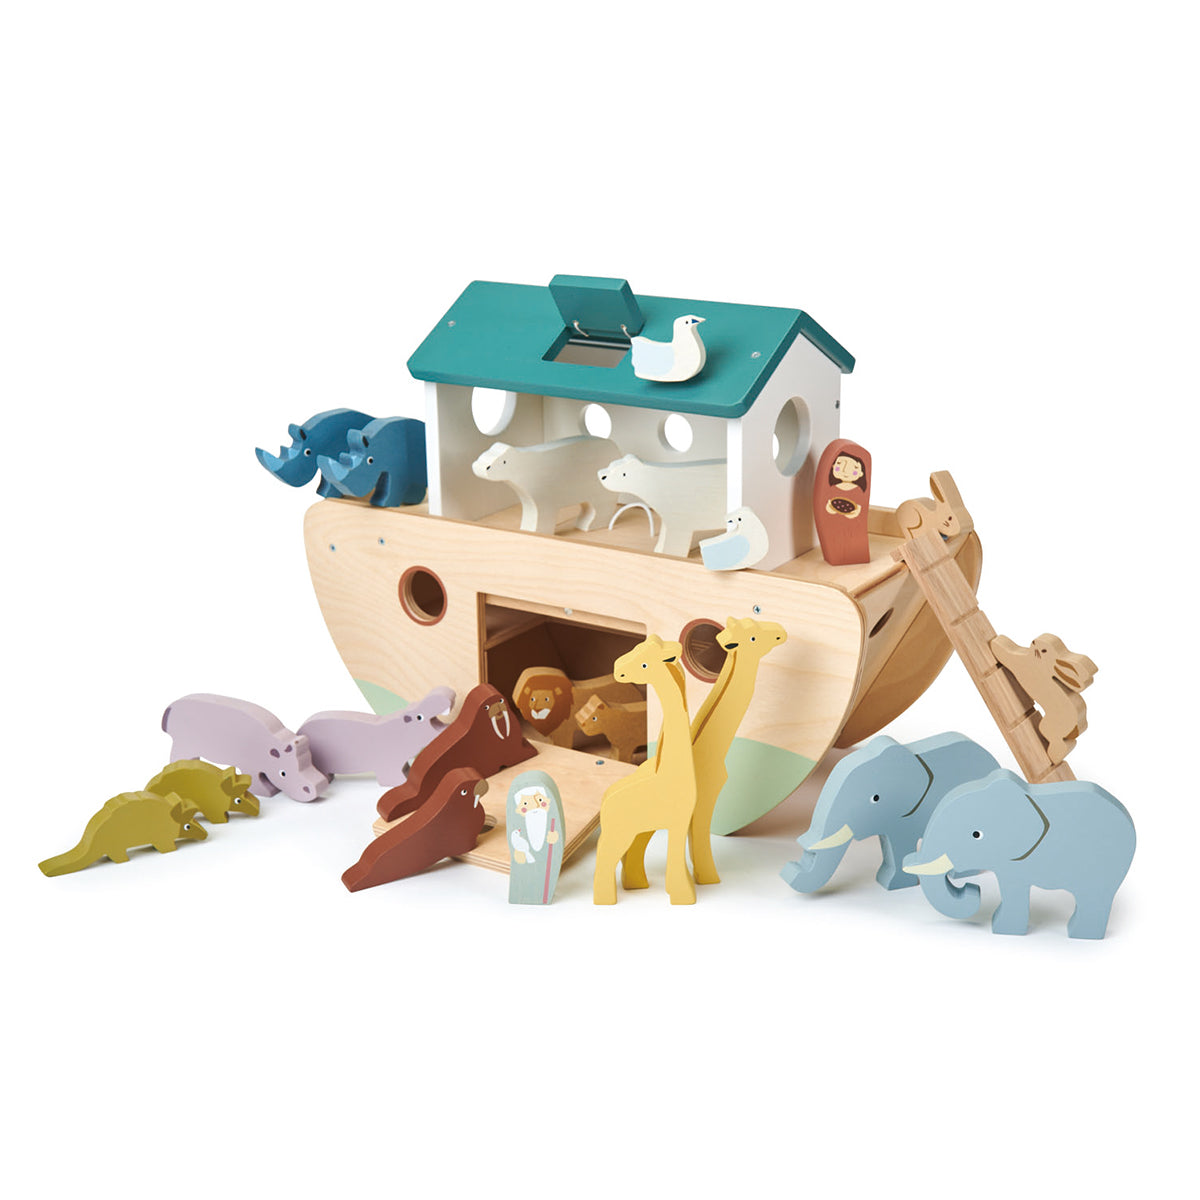 Tender Leaf Toys - Noah's Wooden Arc